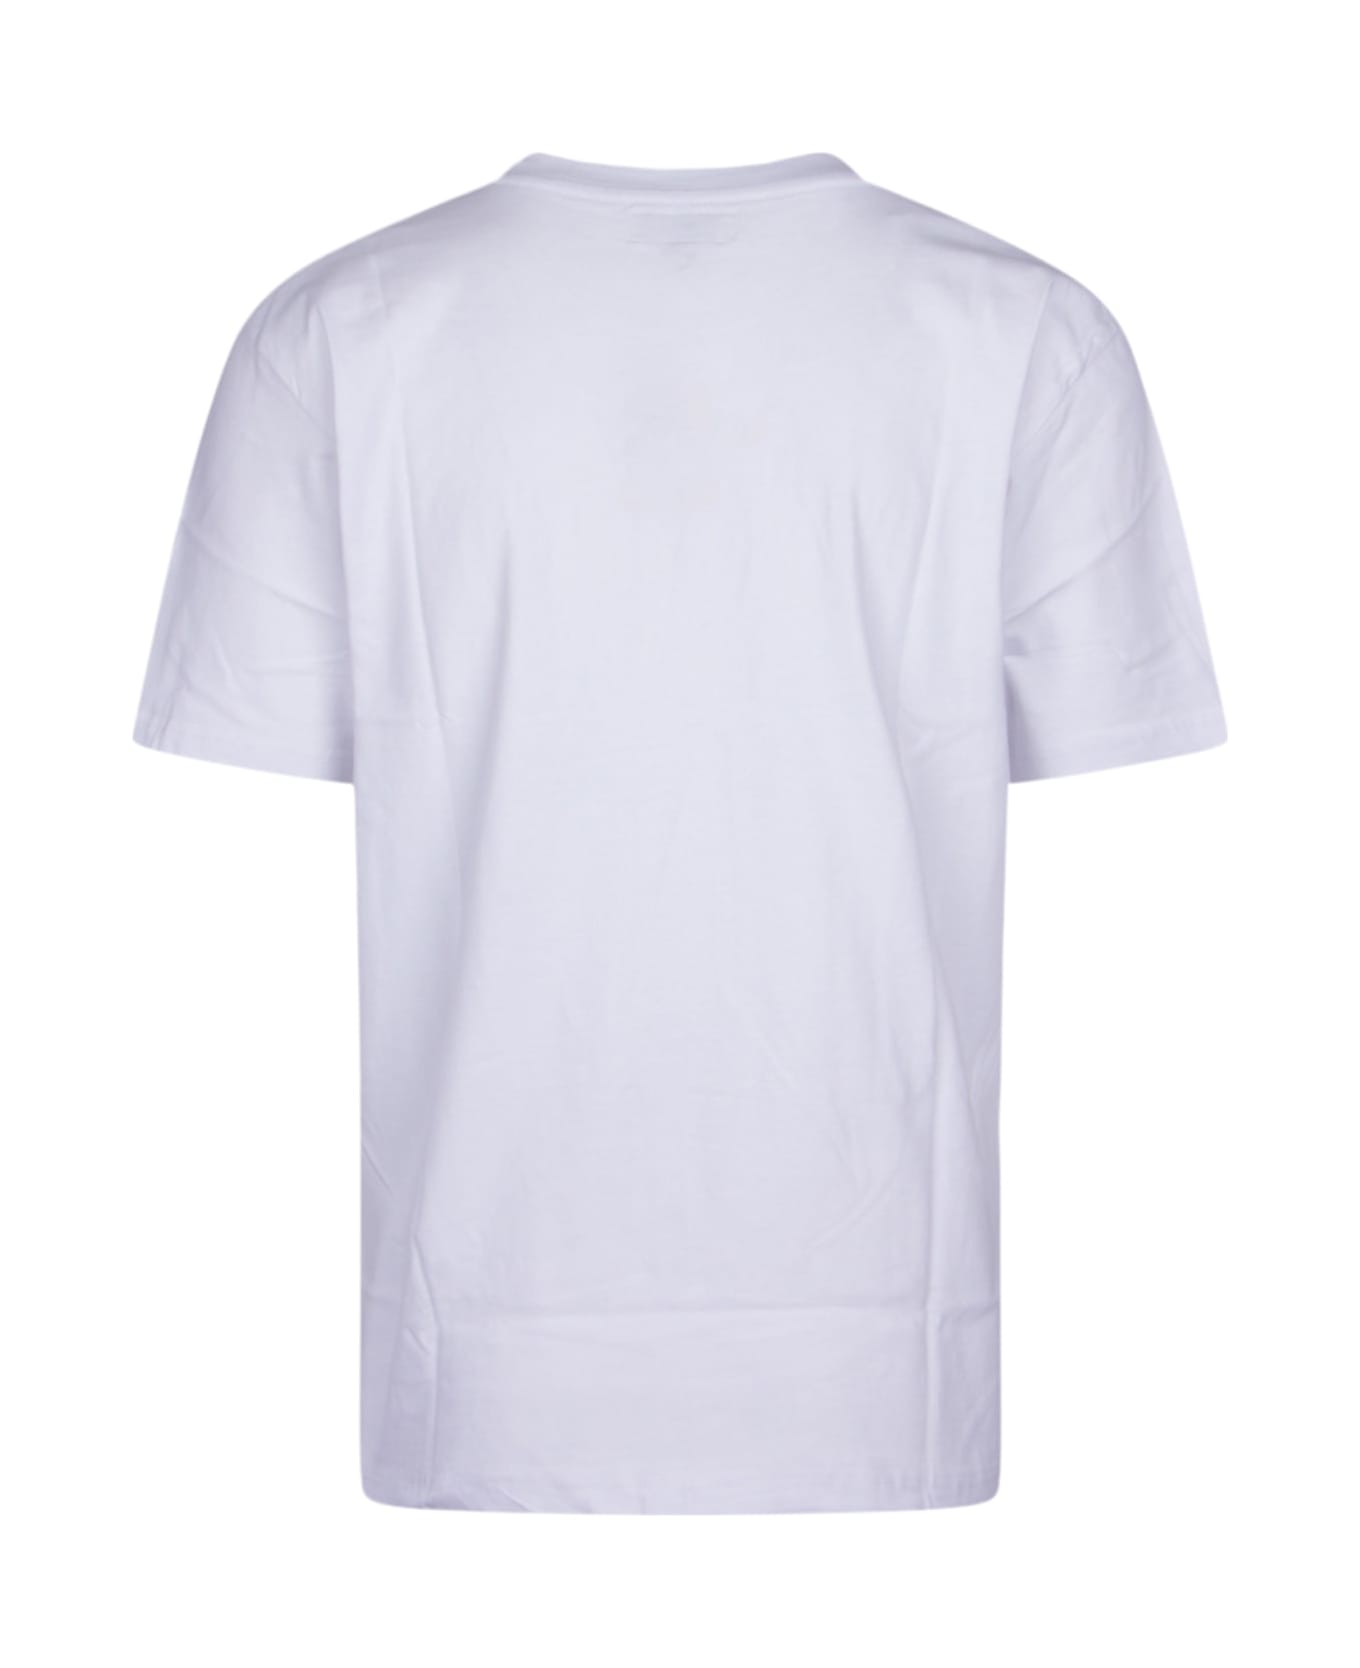 Market T-shirt - WHITE